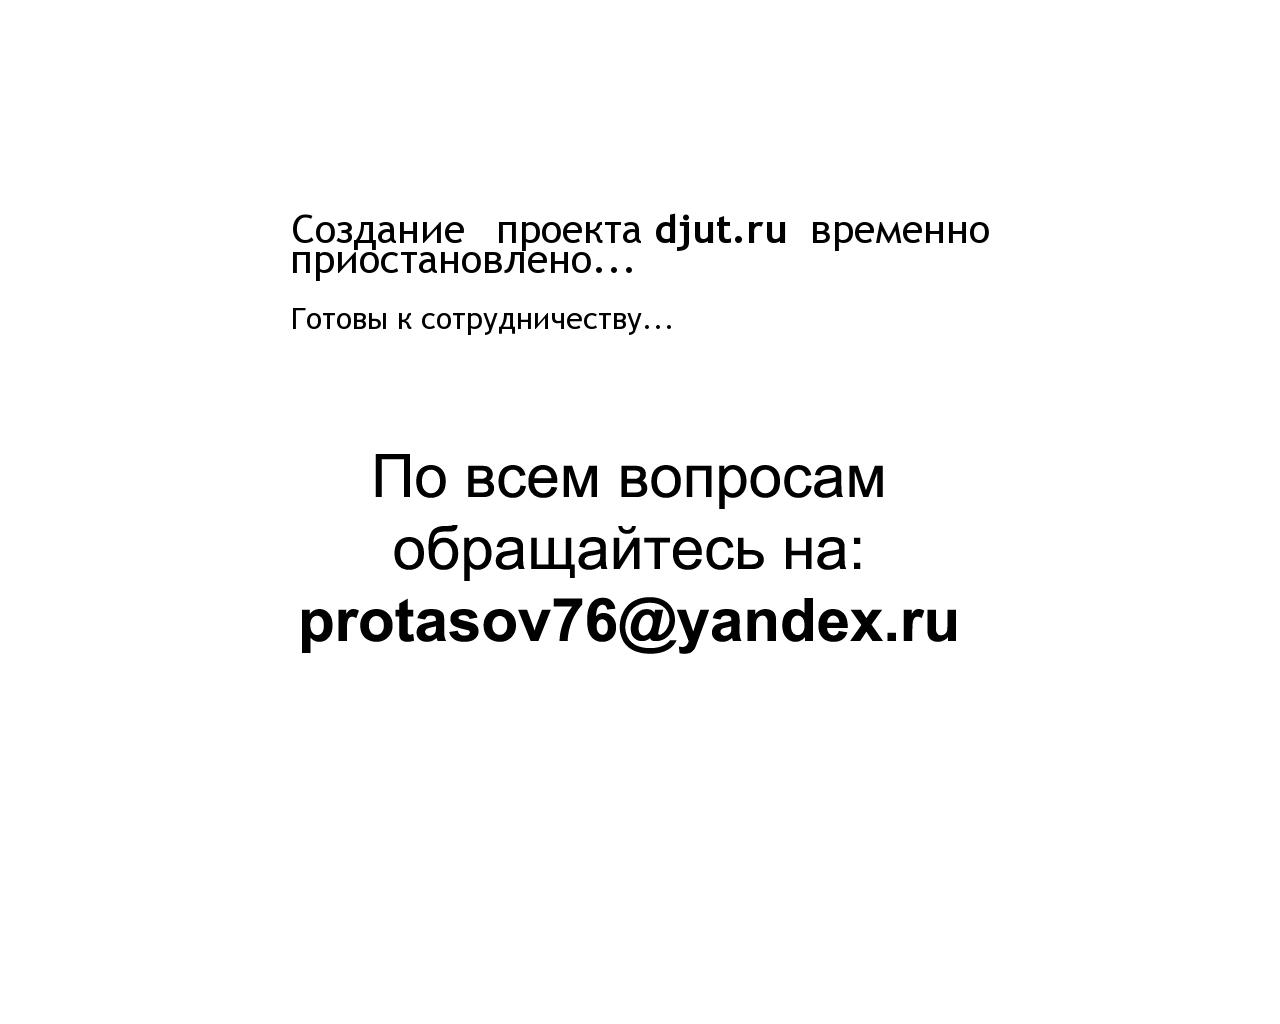 Изображение сайта djut.ru в разрешении 1280x1024